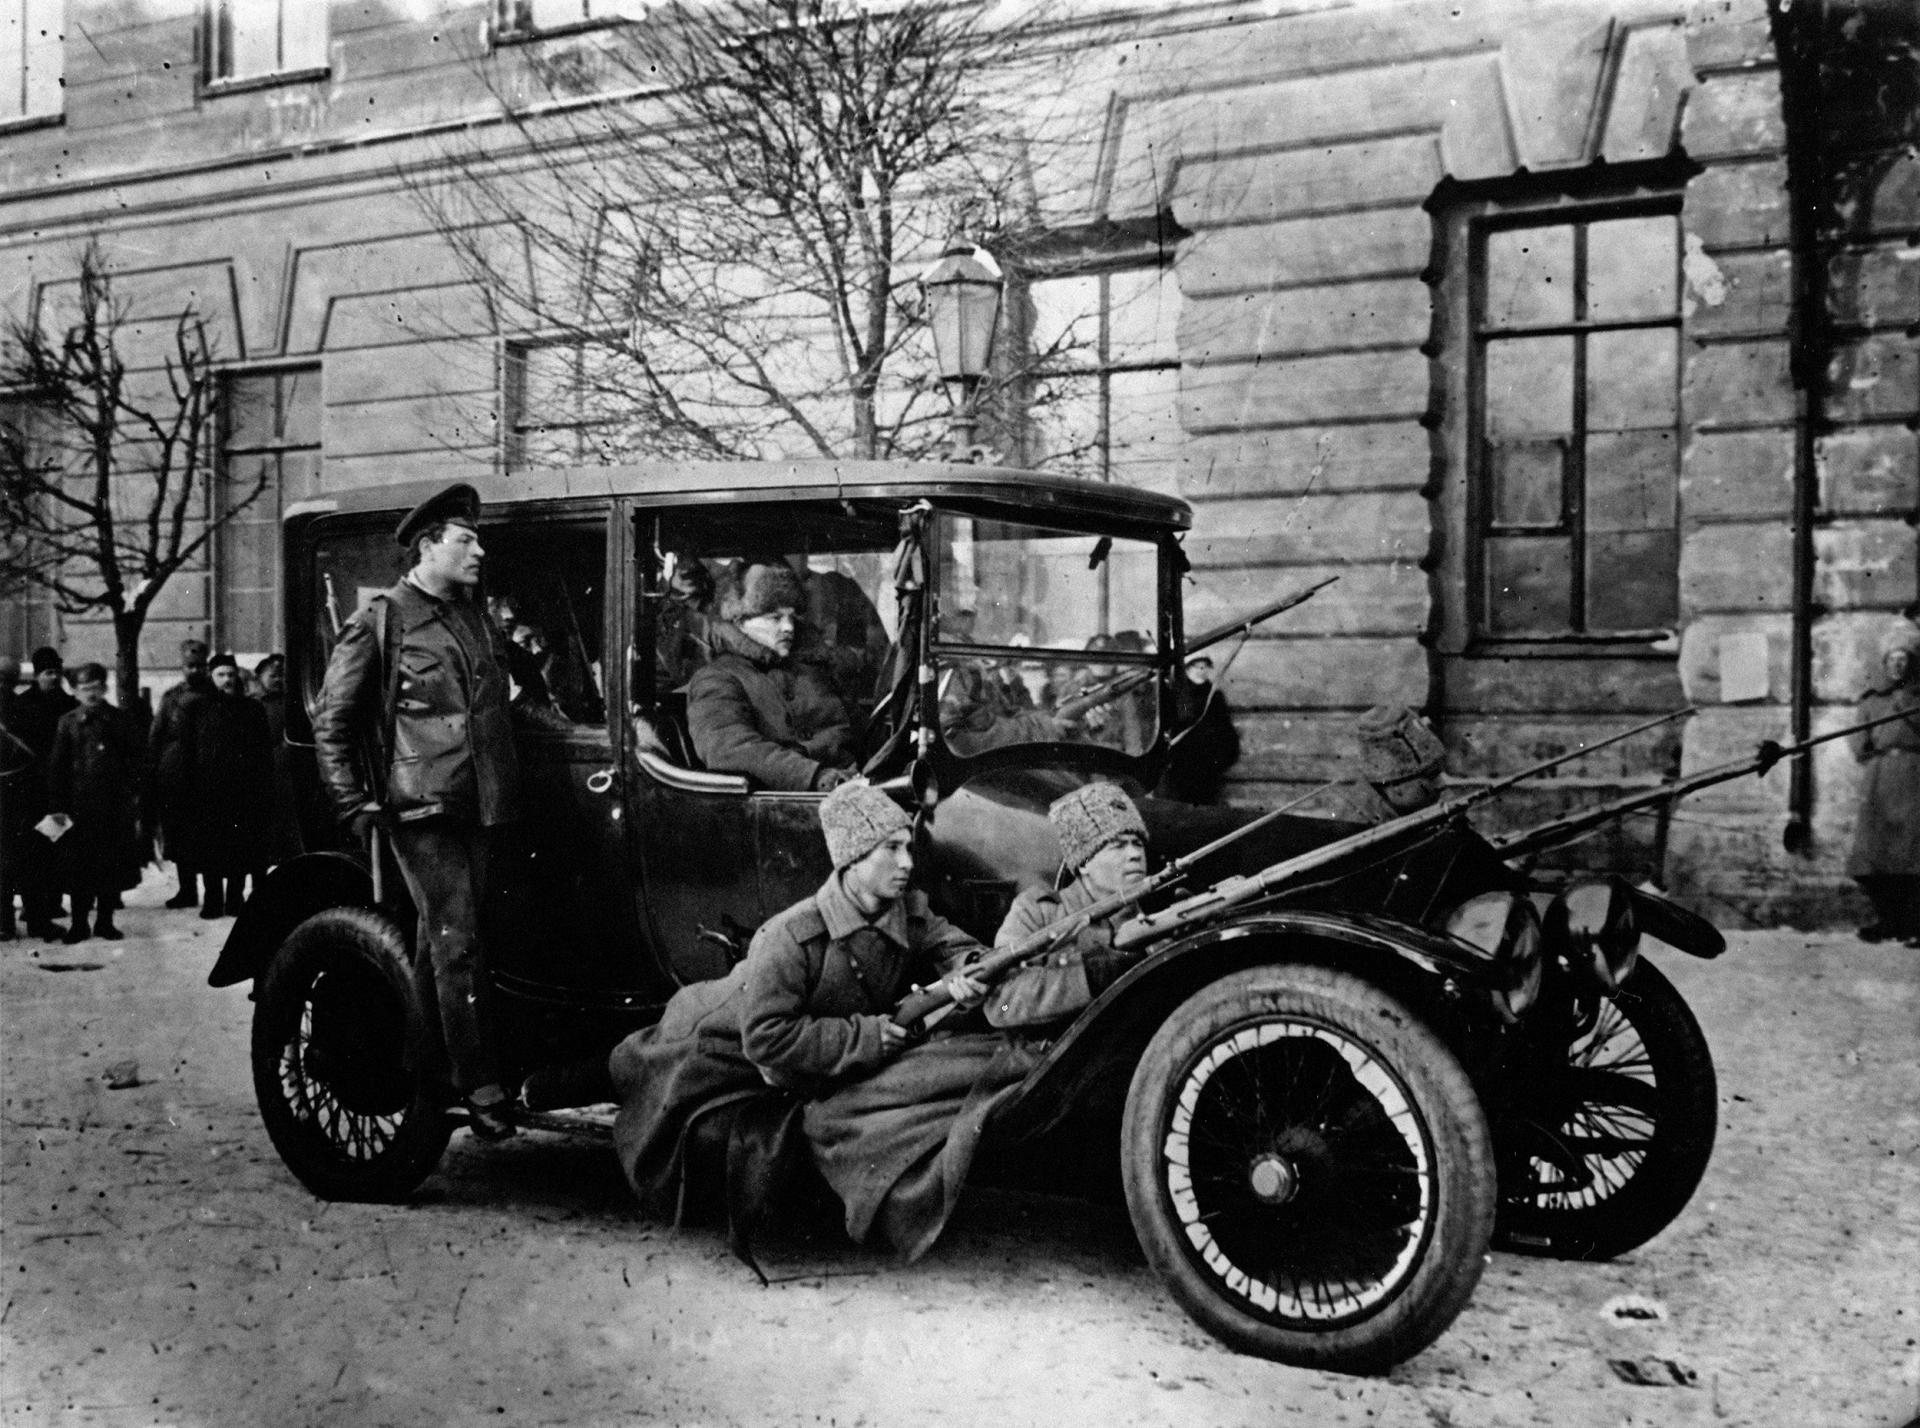 Povstalci pália vo februári 1917 na policajné veliteľstvo v Petrohrade. Takzvaná Februárová revolúcia sa začala generálnym štrajkom. V dôsledku nepokojov abdikoval 15. marca 1917 cár Mikuláš II. Krátko nato vznikla Kerenského Dočasná vláda.